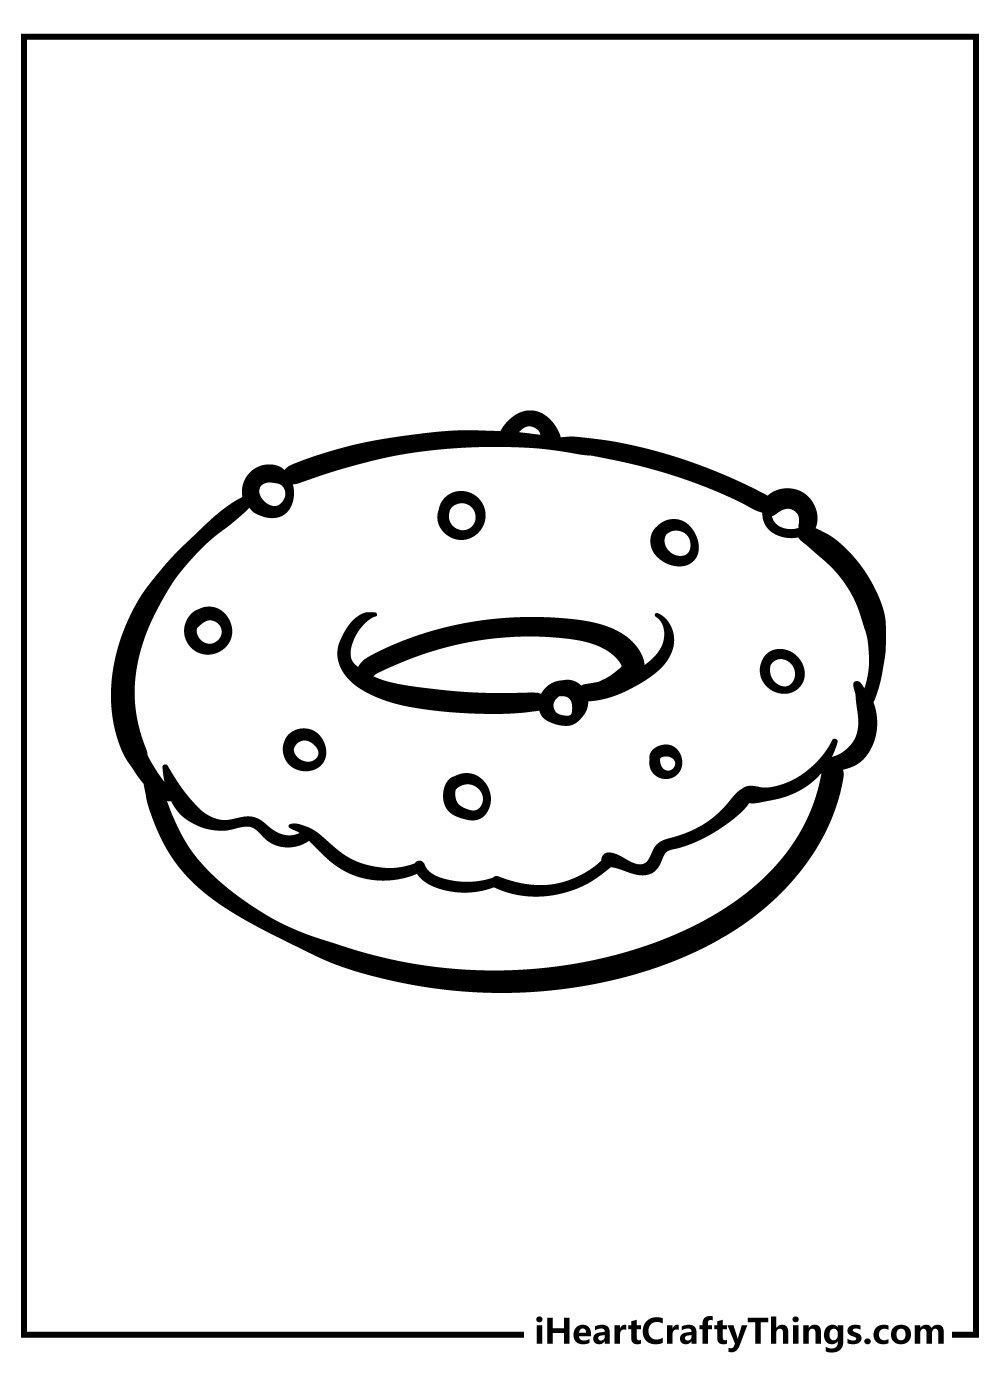 Раскраска пончик с глазами